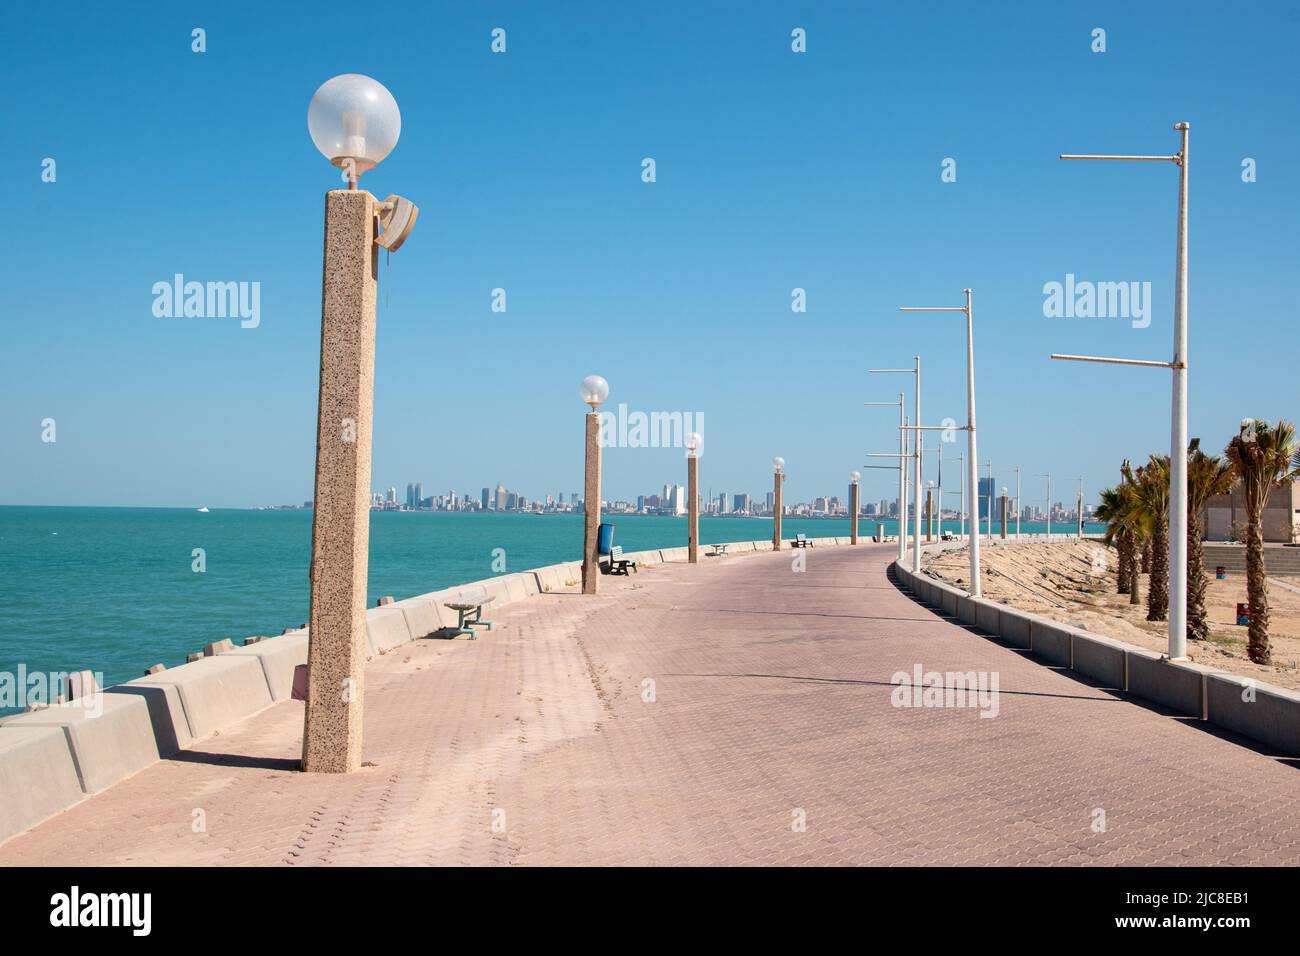 A walkway following the Persian Gulf on the Green Island of Kuwait City, Kuwait Stock Photo